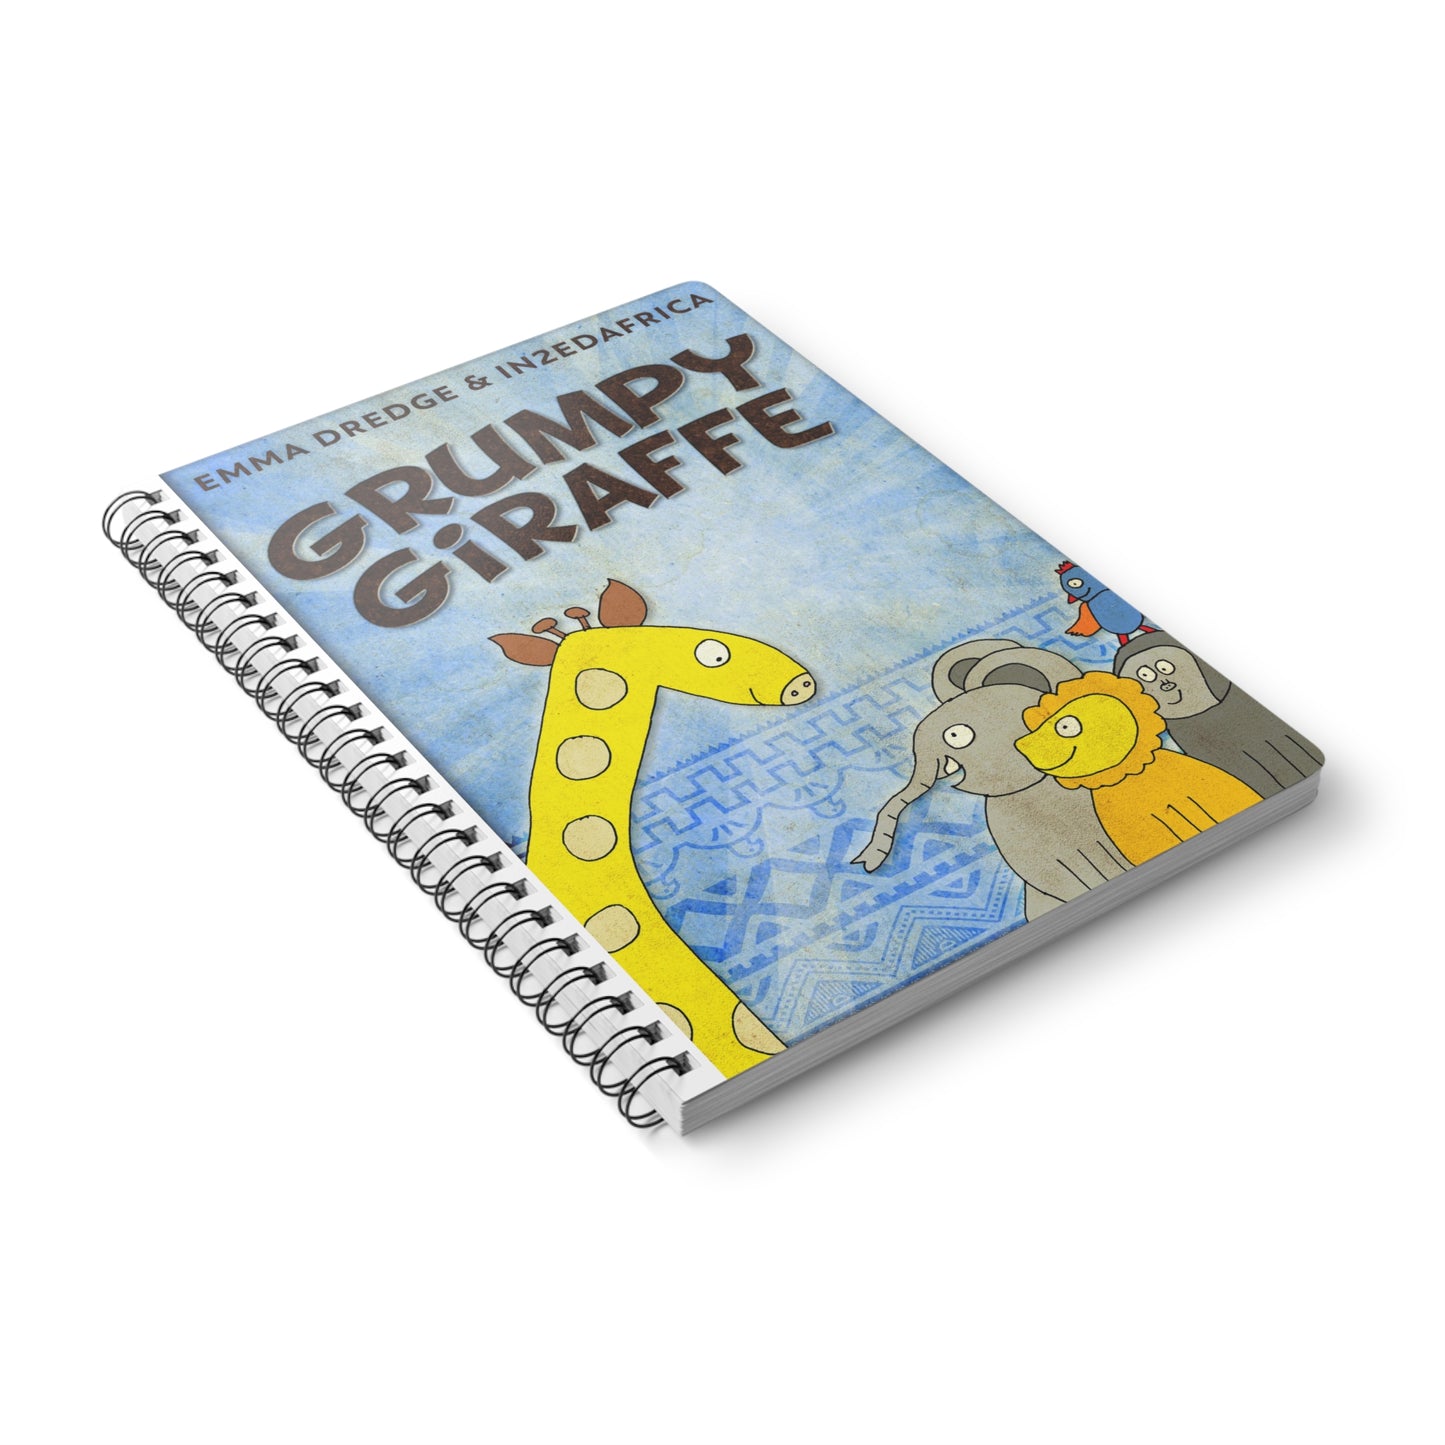 Grumpy Giraffe - A5 Wirebound Notebook